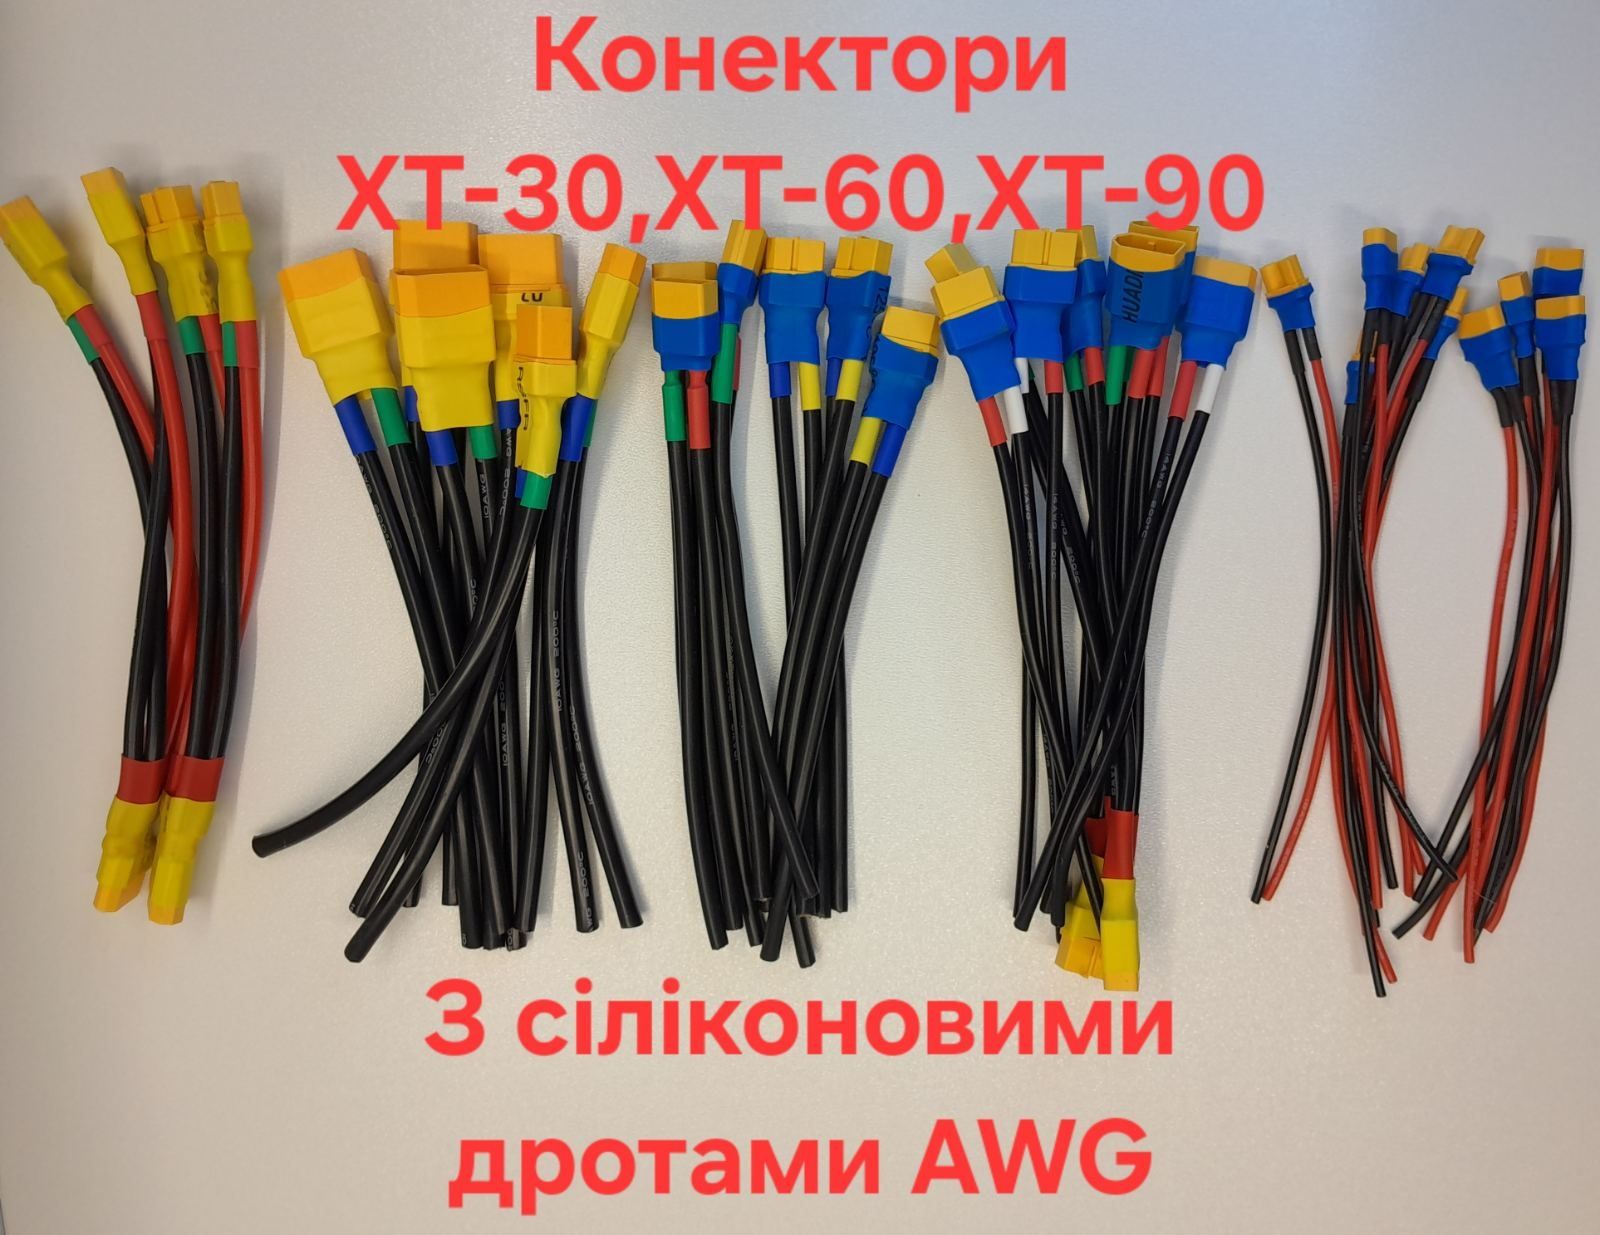 Конектори XT-60 XT-90 XT-30 з силікон кабелем AWG  балансири JST-HX